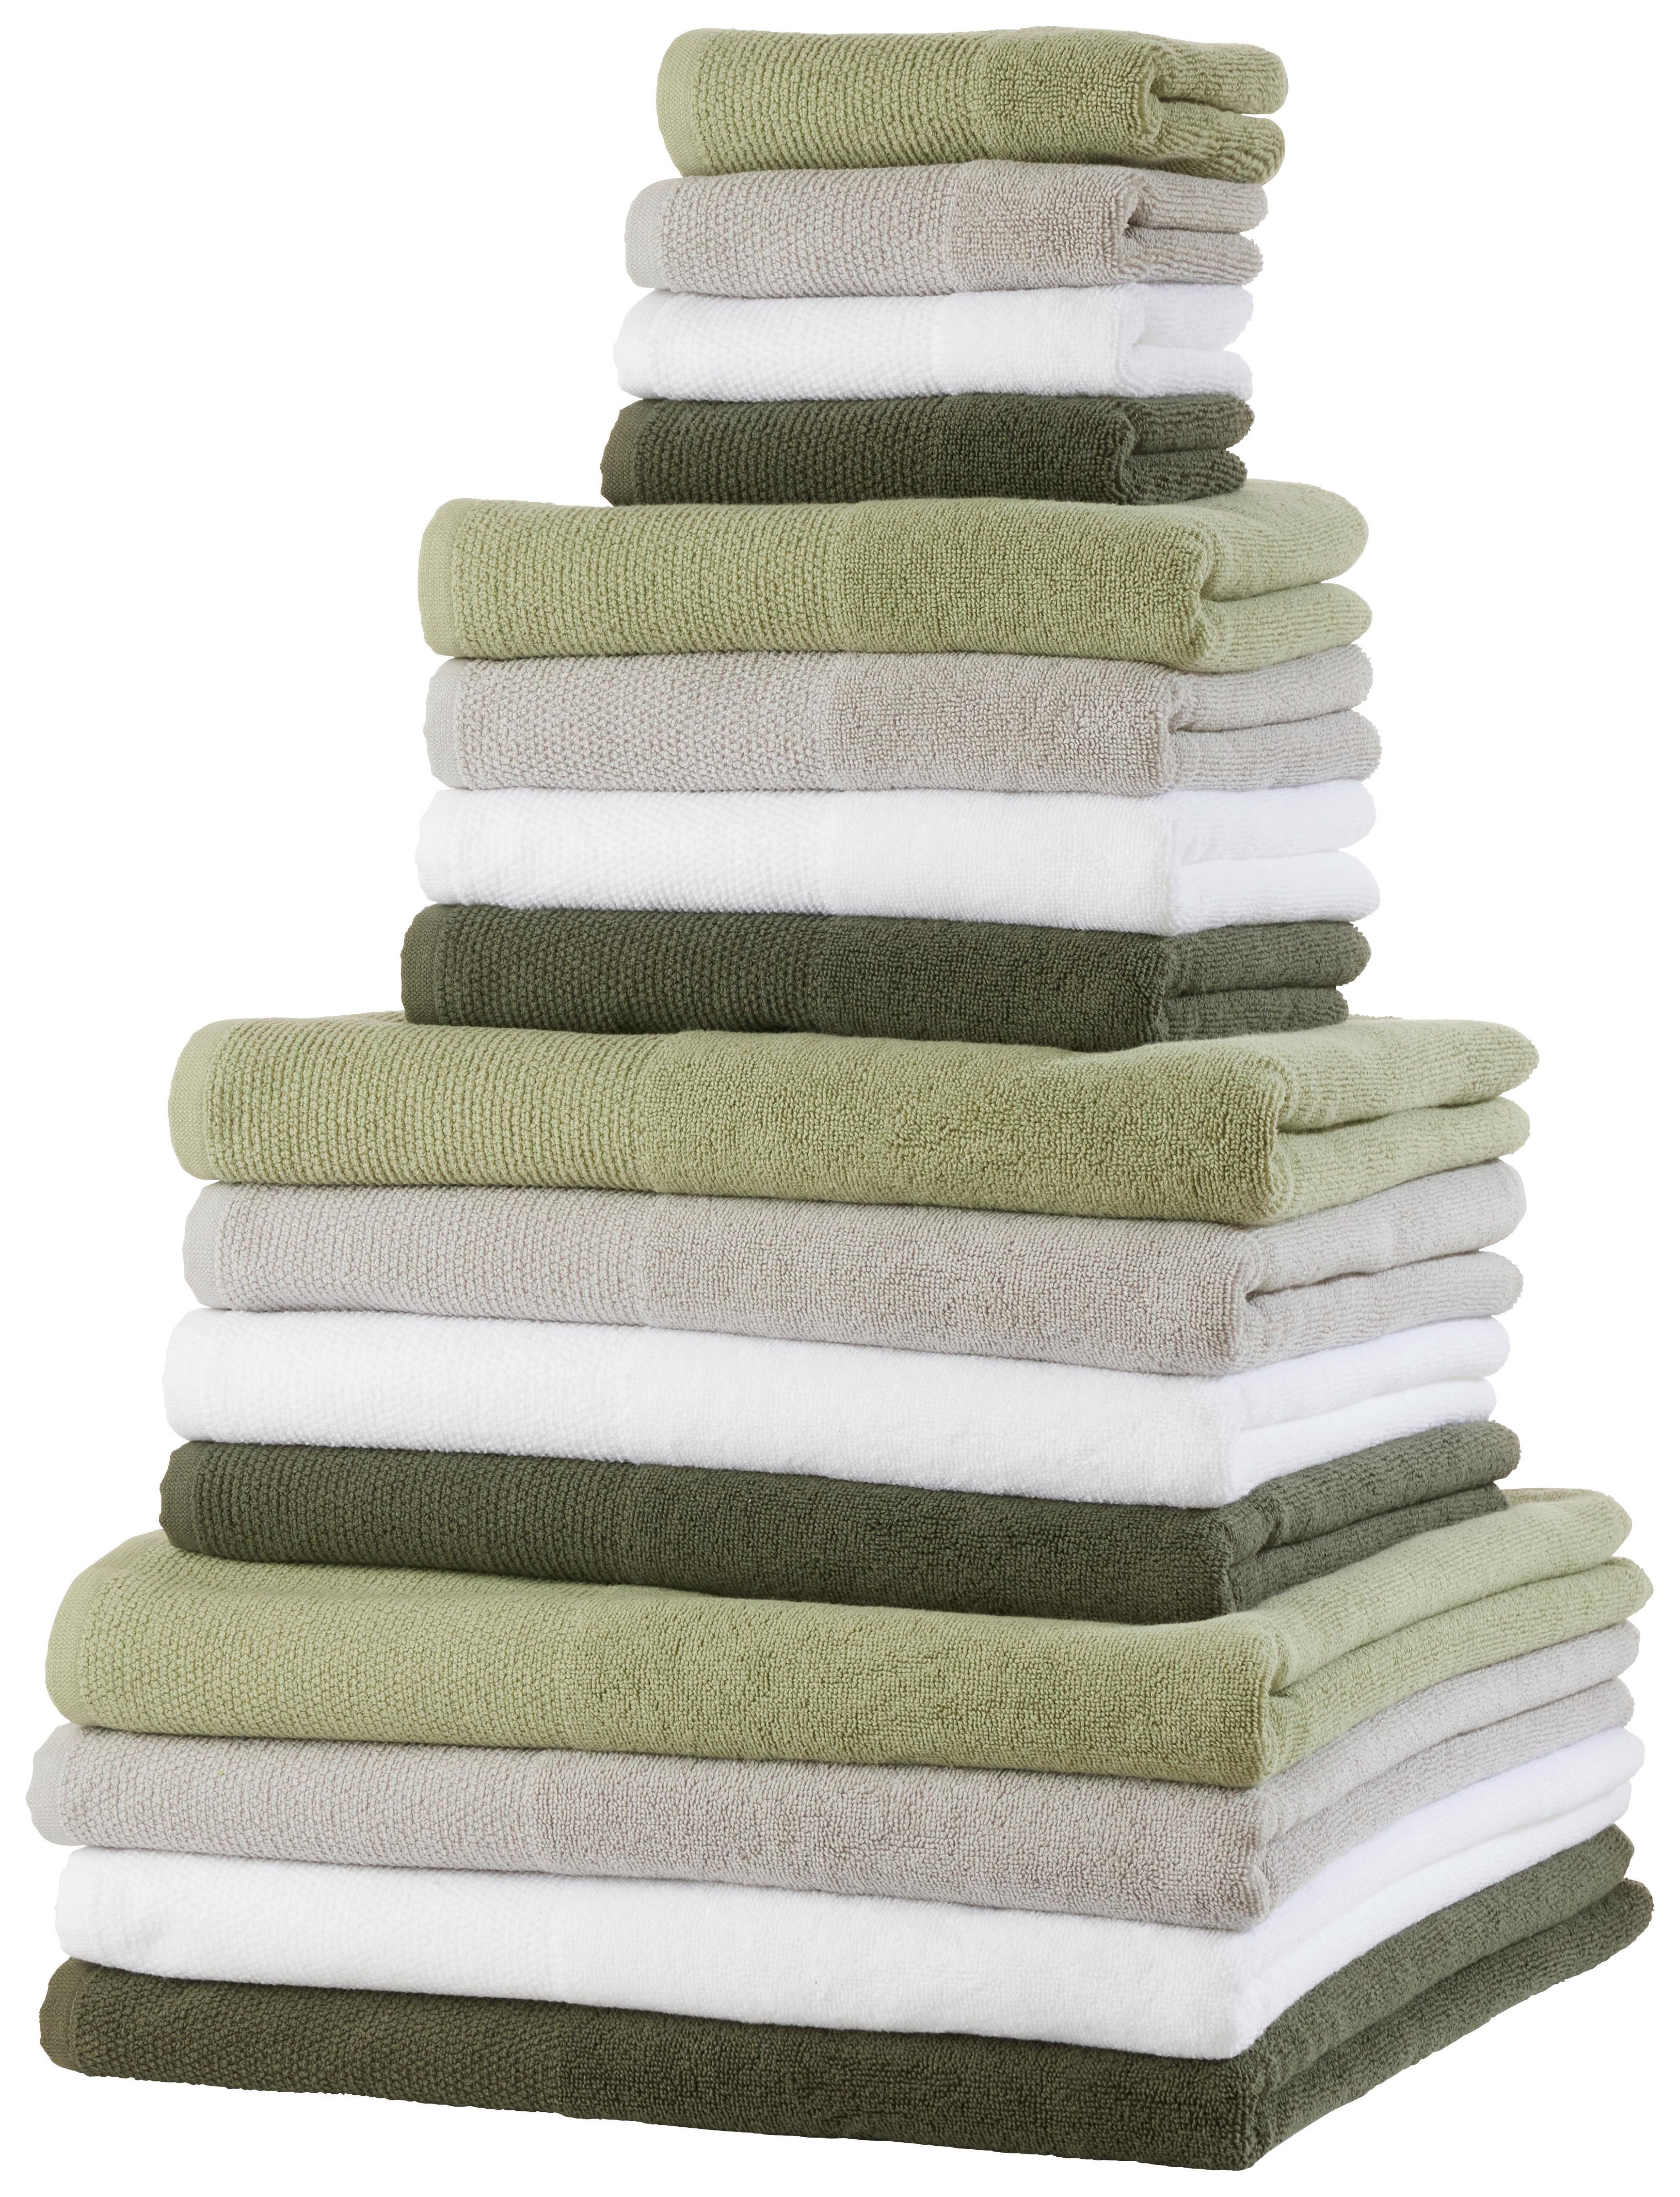 Handtuch Olivia in Weiß ca. 50x100cm - Weiß, KONVENTIONELL, Textil (50/100cm) - Premium Living